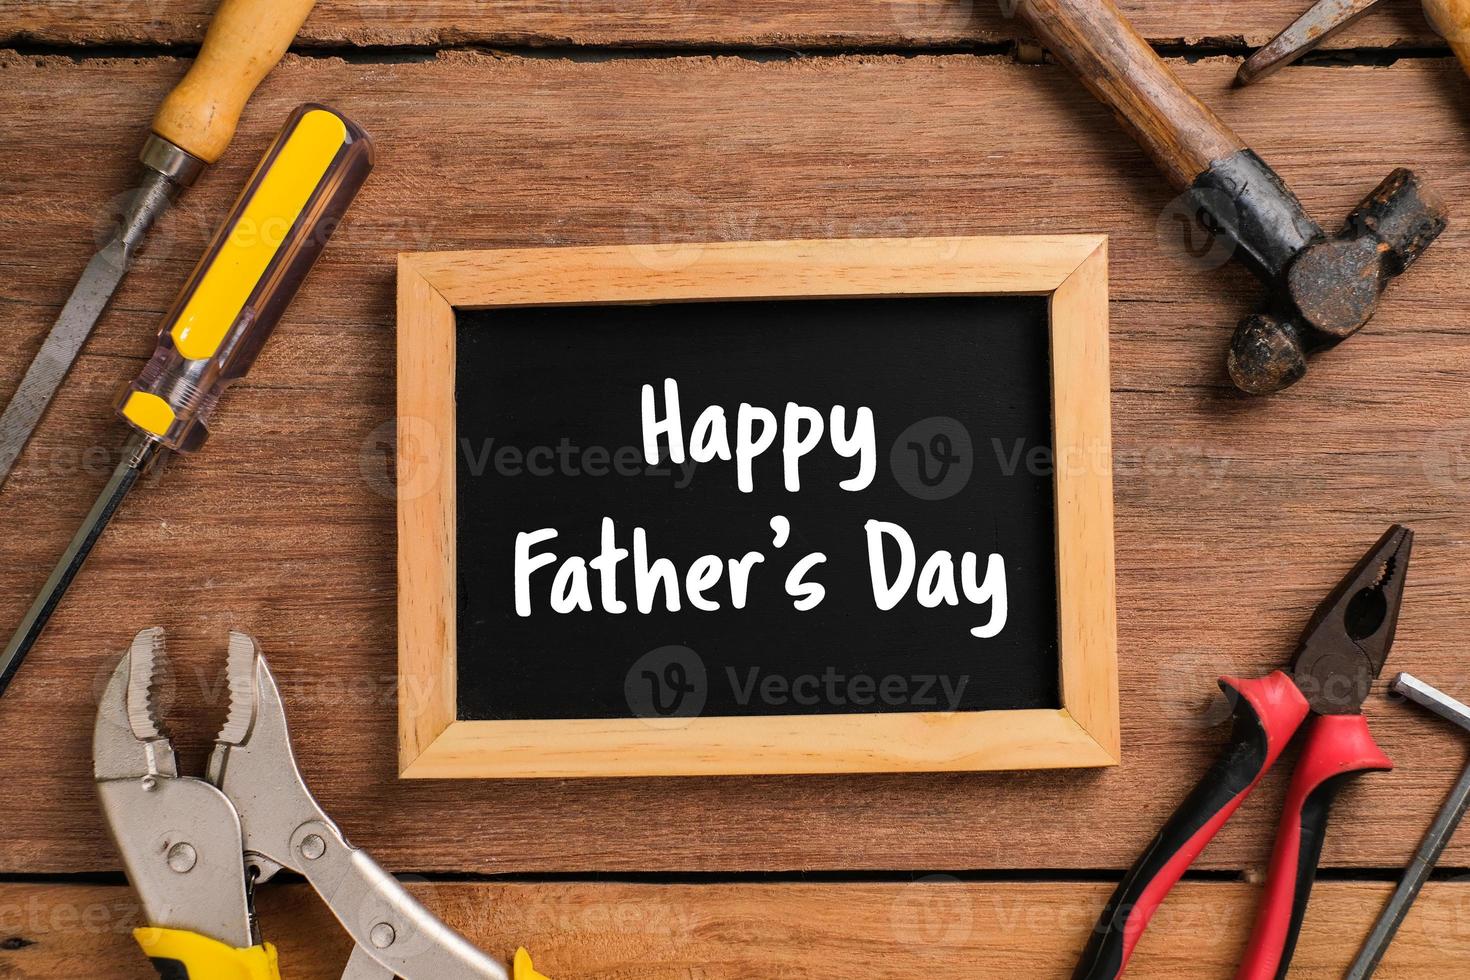 Happy Fathers Day Text mit Seitenrand von Werkzeugen und Krawatten auf rustikalem Holzhintergrund foto